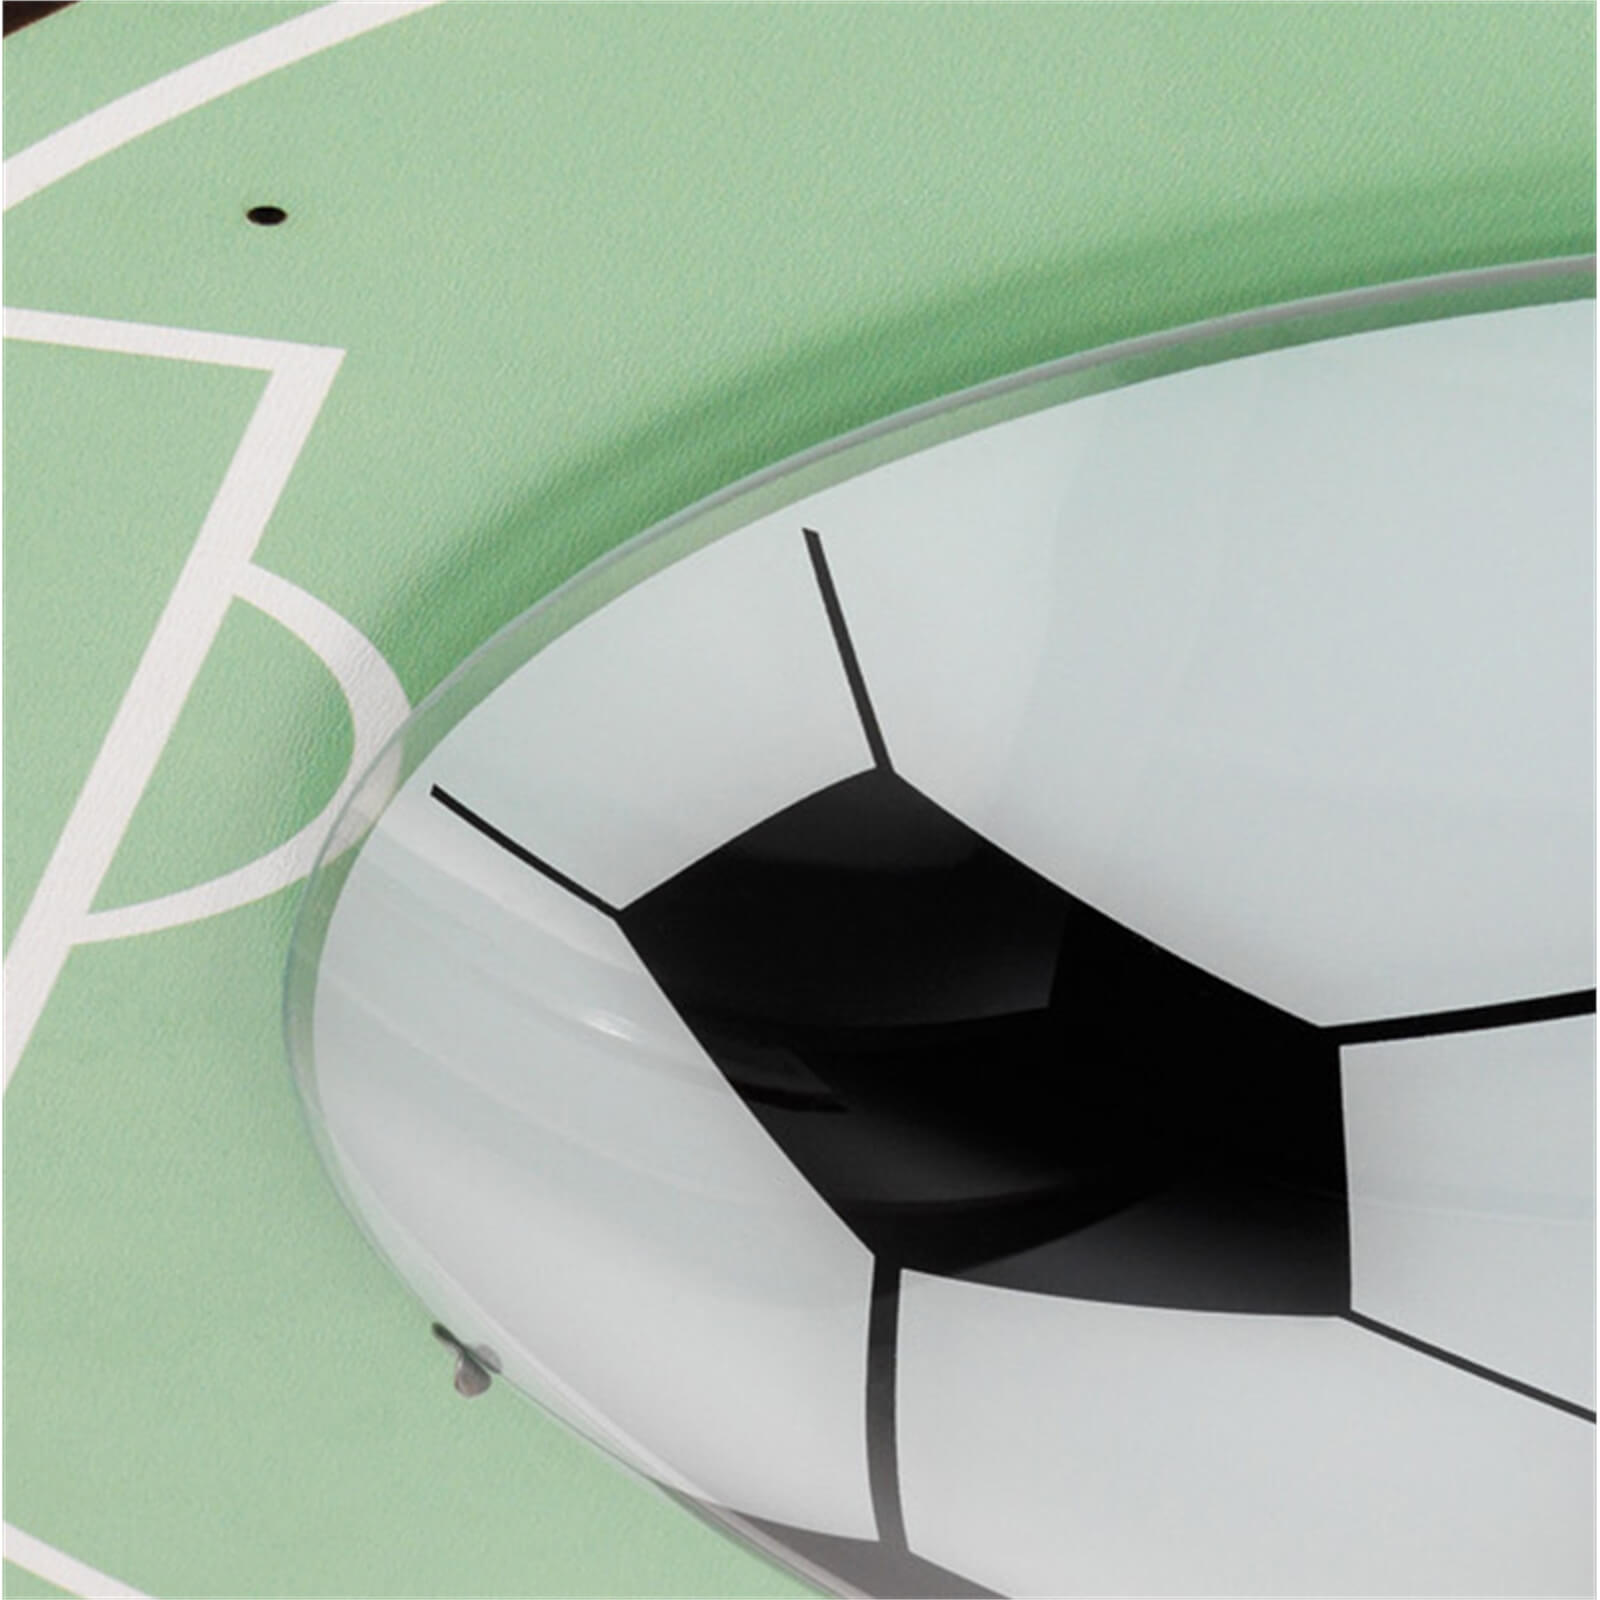 Eglo Tabara Childrens Football Ceiling Light - Green & White